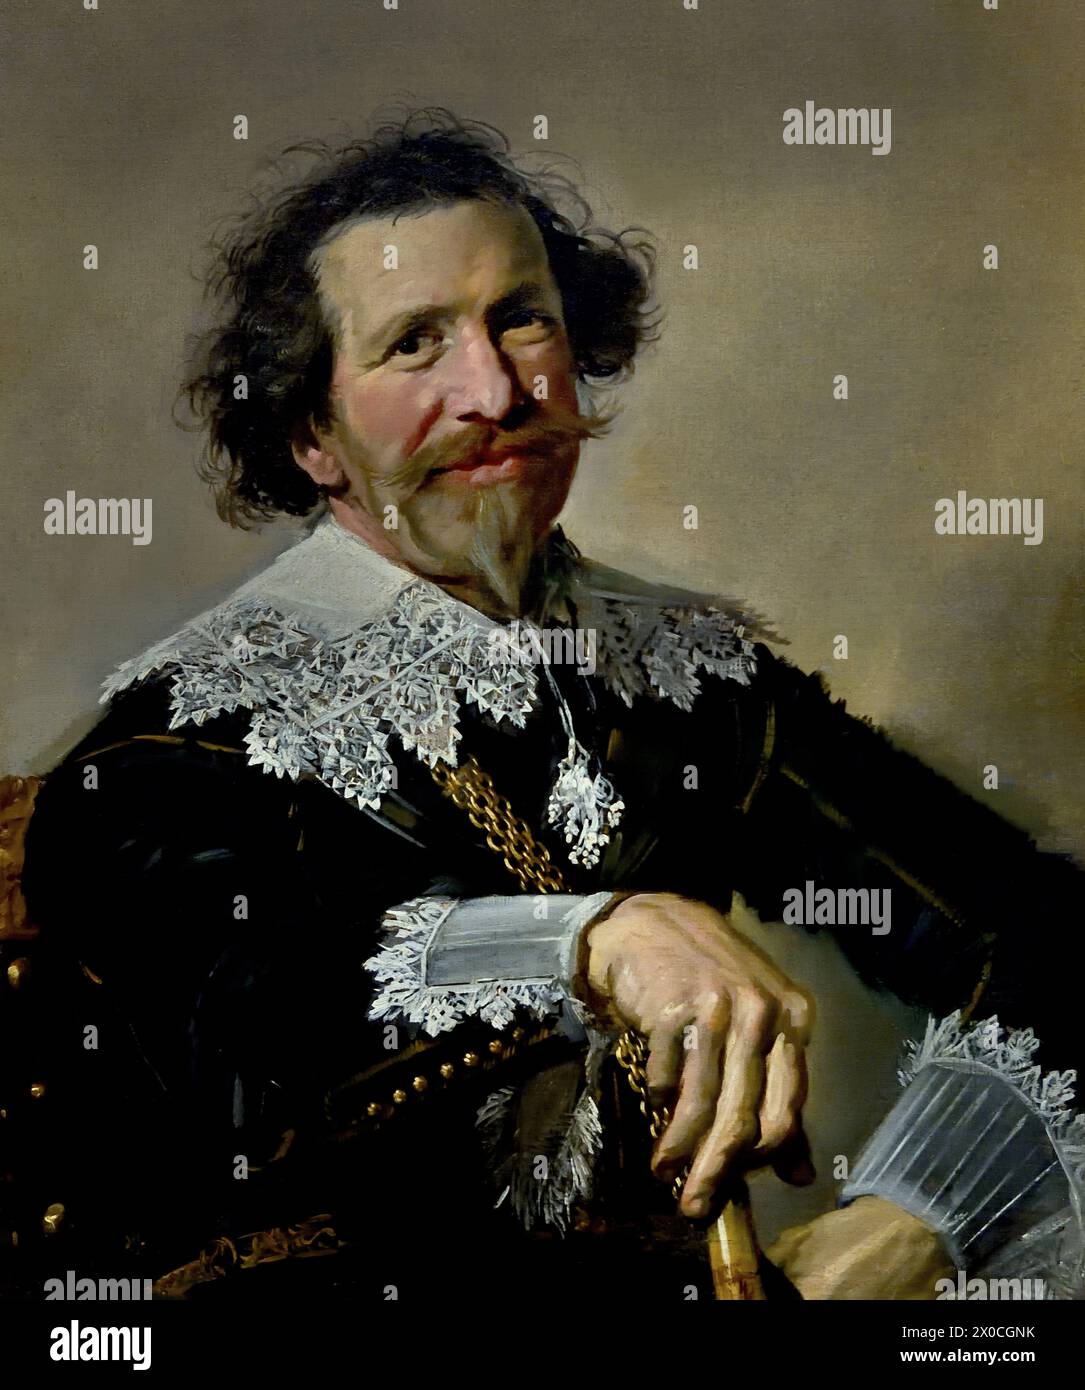 Pieter van den Broecke (Antwerpen, 1585 – Straat Malakka, 1640) war ein Tuchhändler im Dienst der Niederländischen Ostindien-Kompanie (VOC). Er unternahm fünf Reisen und war acht Jahre unterwegs. Er war einer der ersten Niederländer, die Kaffee tranken. Frans Hals, 1582-1666, Antwerpen-Haarlem, Niederländisch, Niederlande, 17. Jahrhundert, niederländisches Goldenes Zeitalter ( Er malte lebendige, manchmal sogar fröhliche Porträts von Menschen aller Ebenen der Gesellschaft, wichtigen Menschen, frechen Kindern und sogar Betrunkenen oder Menschen, die für verrückt erklärt wurden. ) Stockfoto